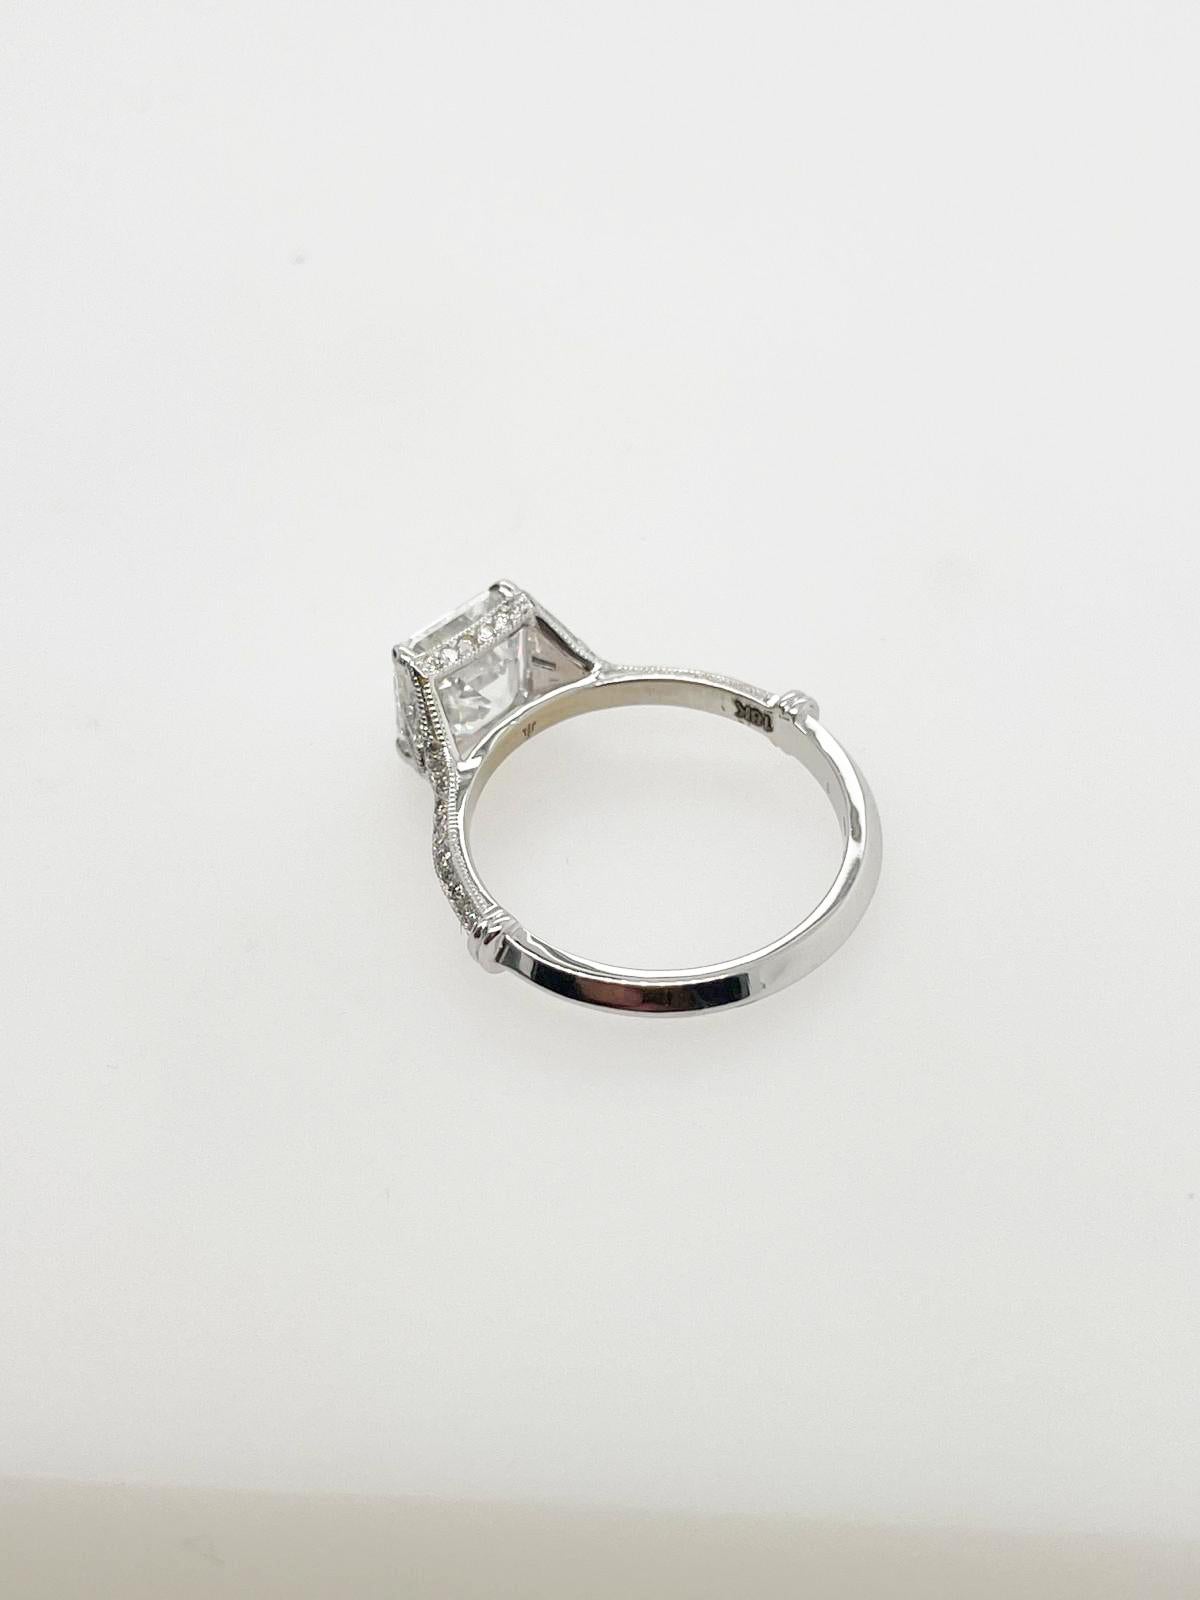 For Sale:  2ct Art Deco asscher cut diamond ring 7